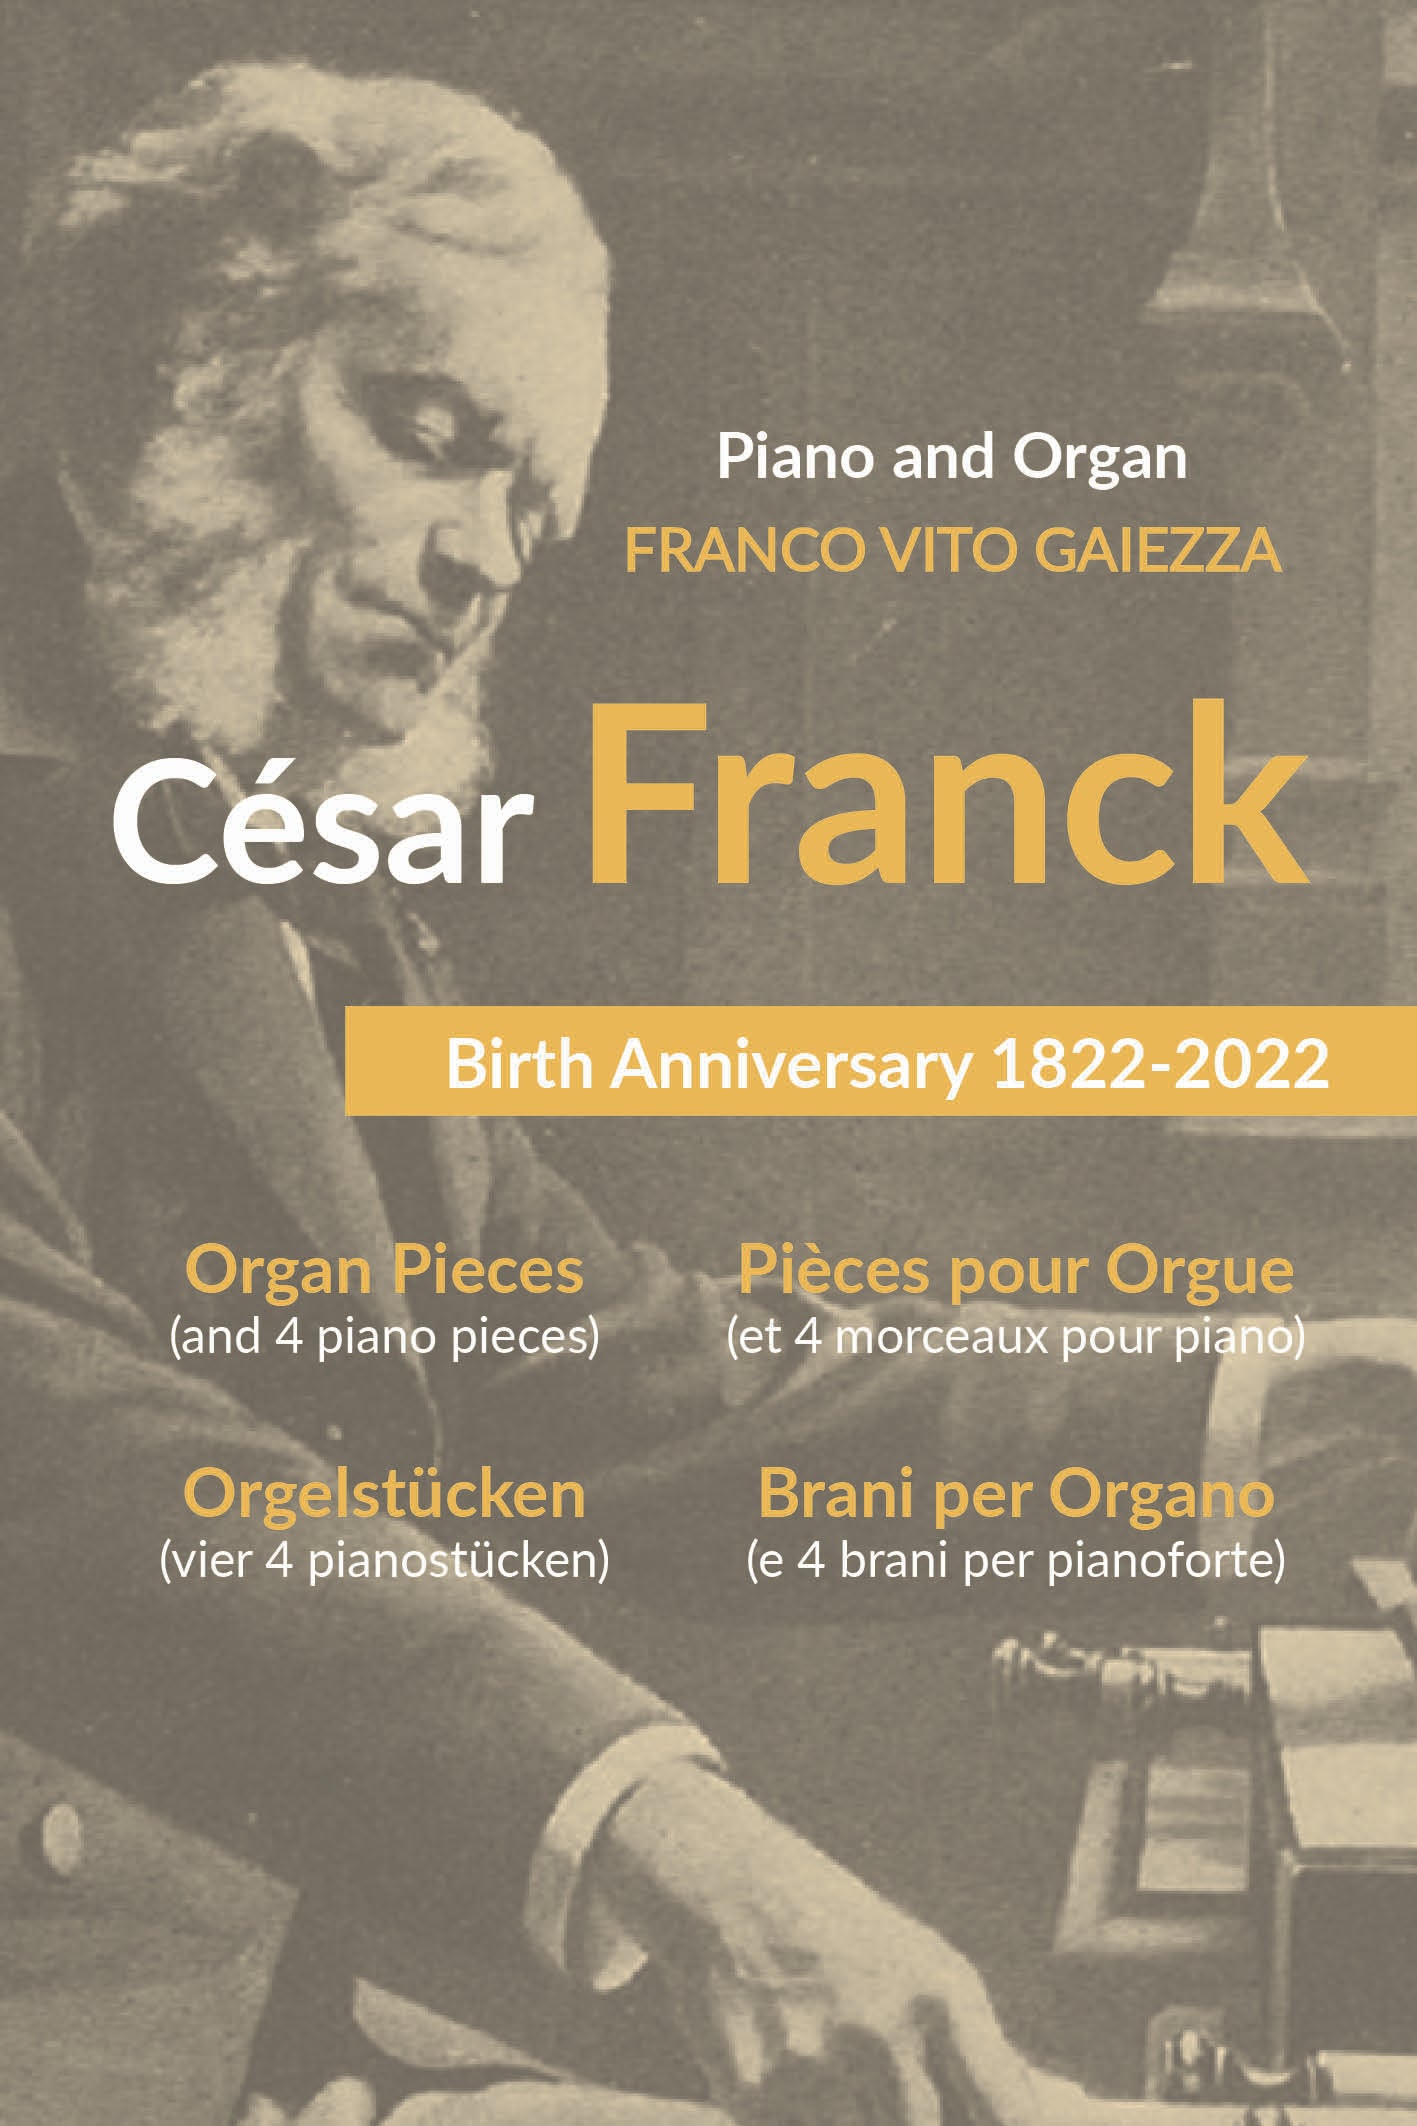 César Franck Piano and Organ a cura di Franco Vito Gaiezza (DVD)